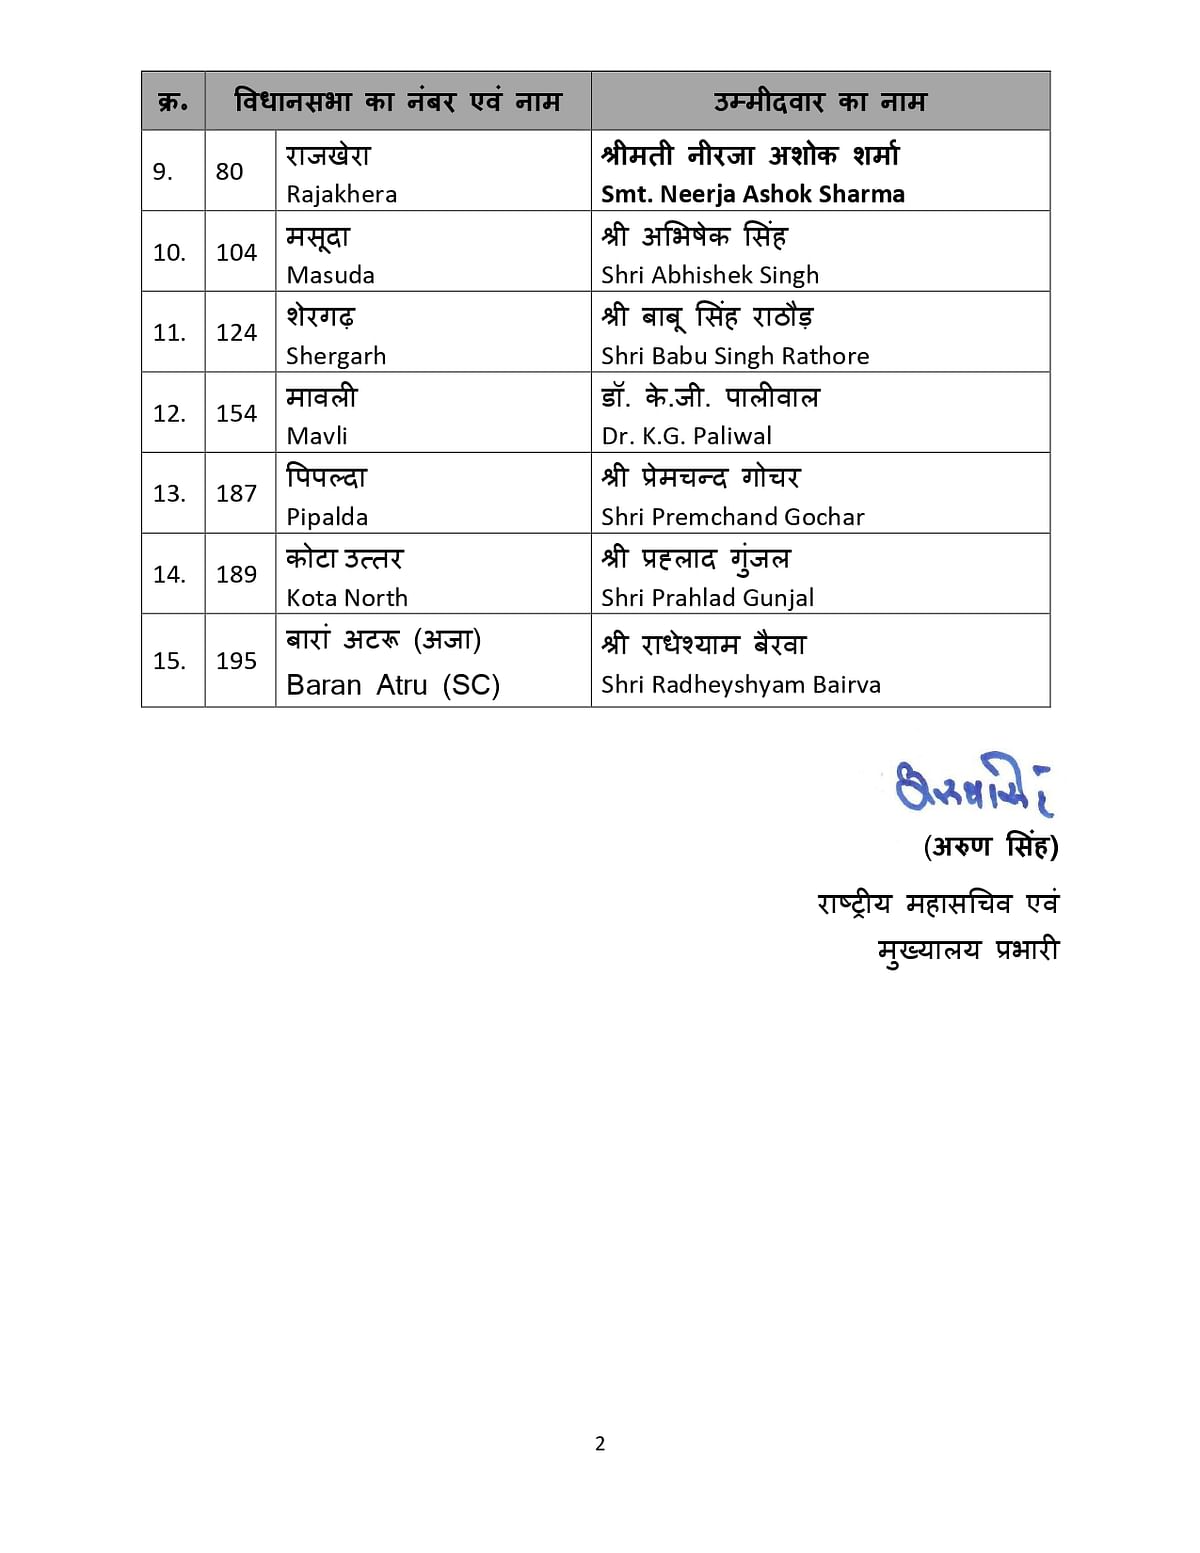 Rajasthan BJP 5th List: आदर्श नगर सीट से विधायक रह चुके अशोक परनामी का भी टिकट कट गया है. 